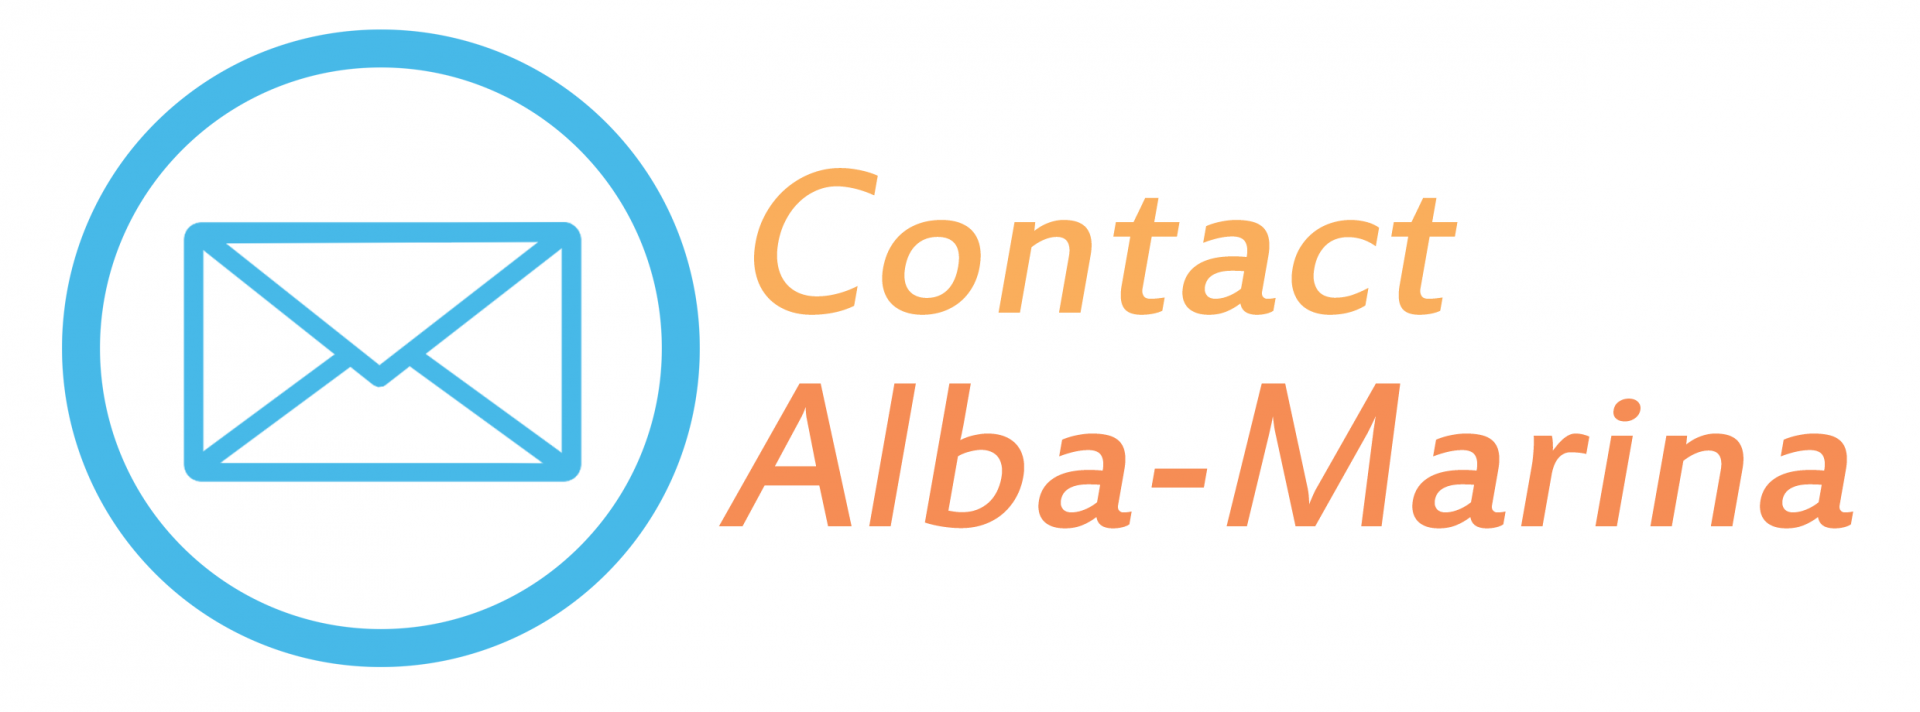 Alba marina contact